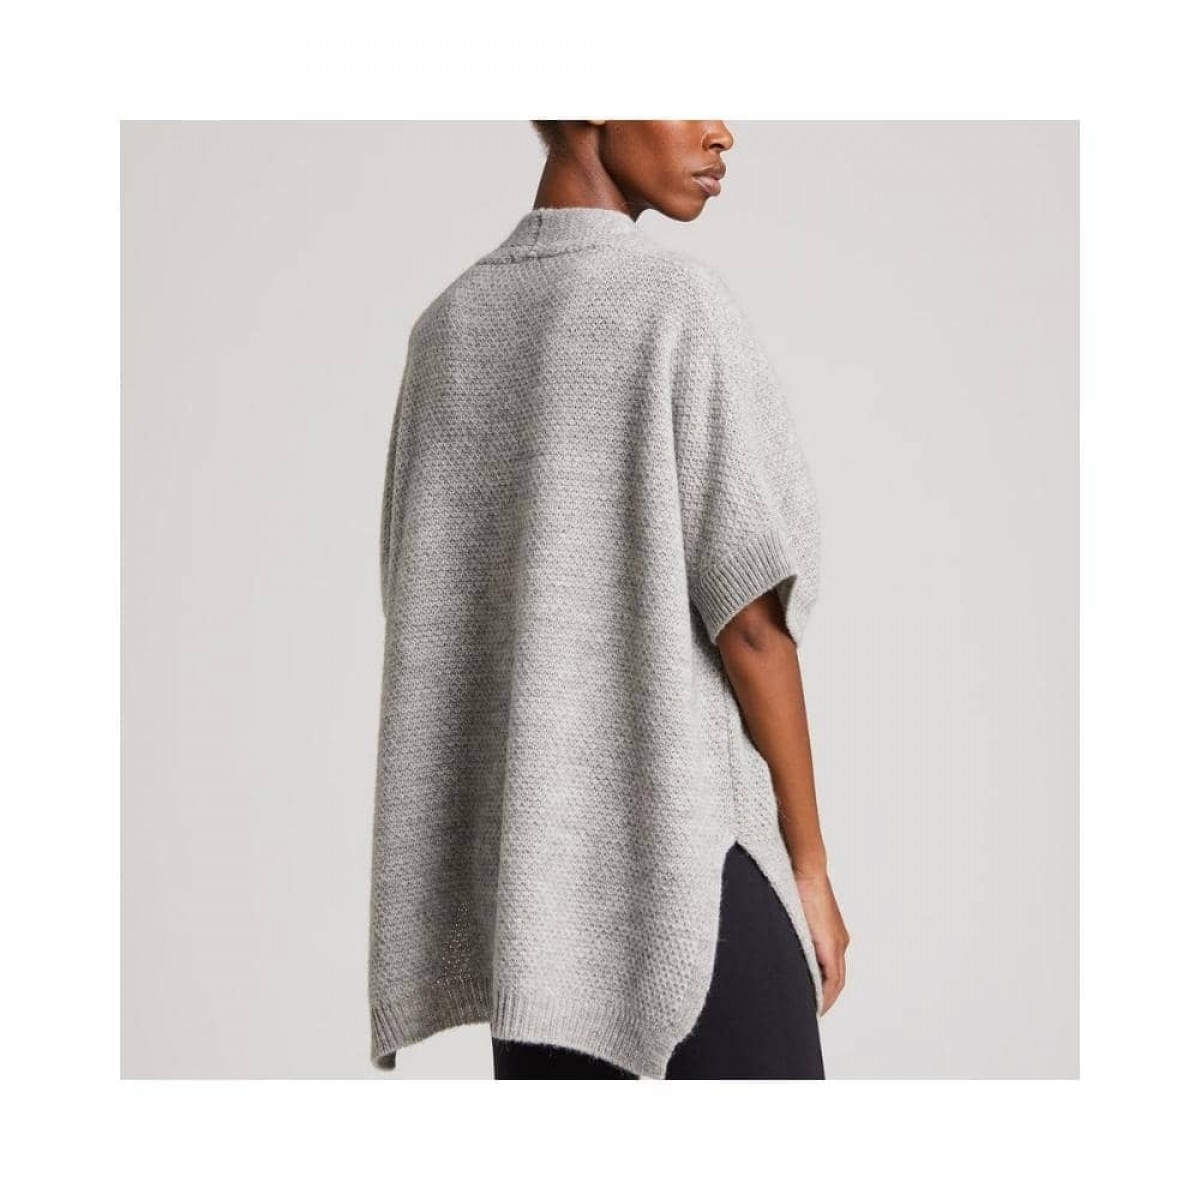 irma knit vest - grey melange - model ryg